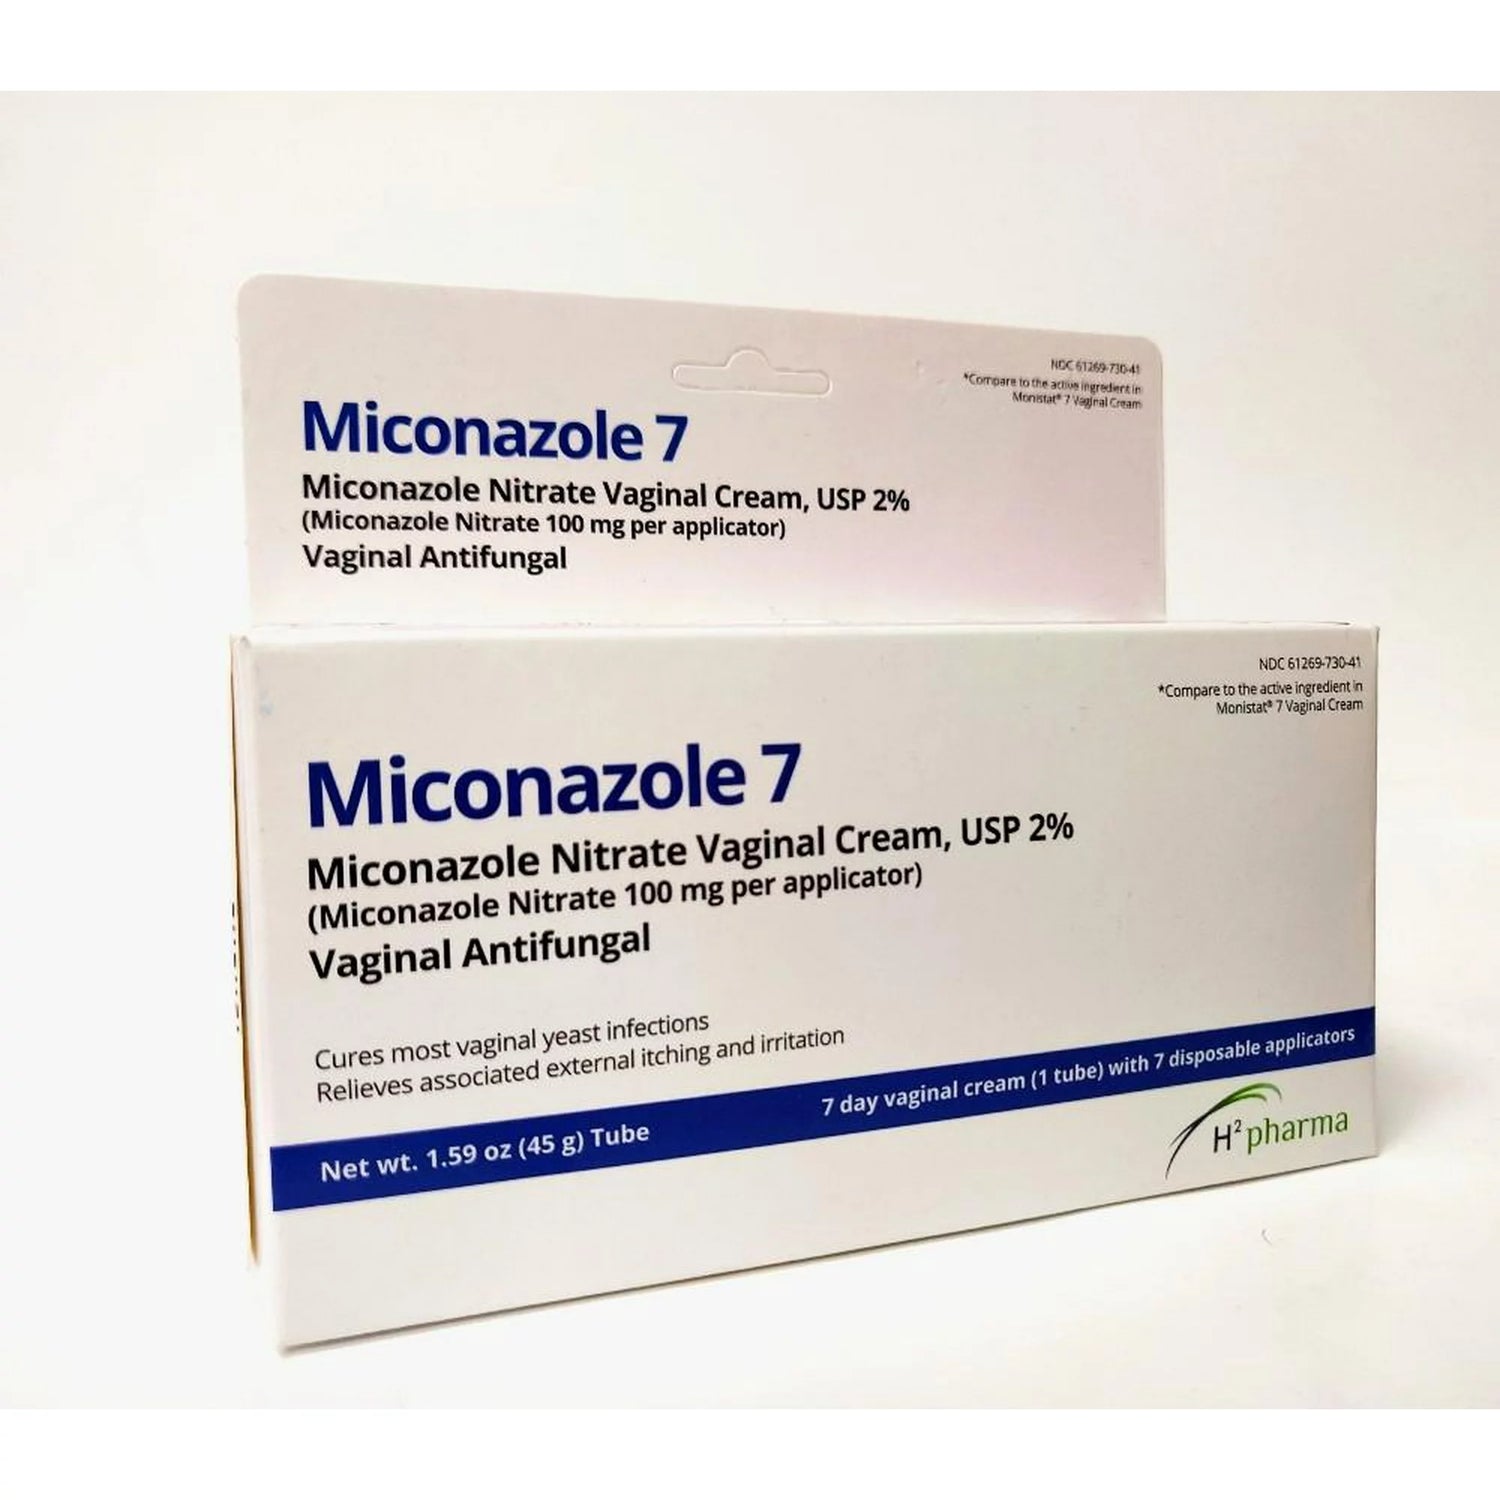 Miconazole 7 - Crema vaginal de nitrato de miconazol al 2%, tubo de 1.59 oz - Antimicótico para infecciones por hongos, alivia la picazón 